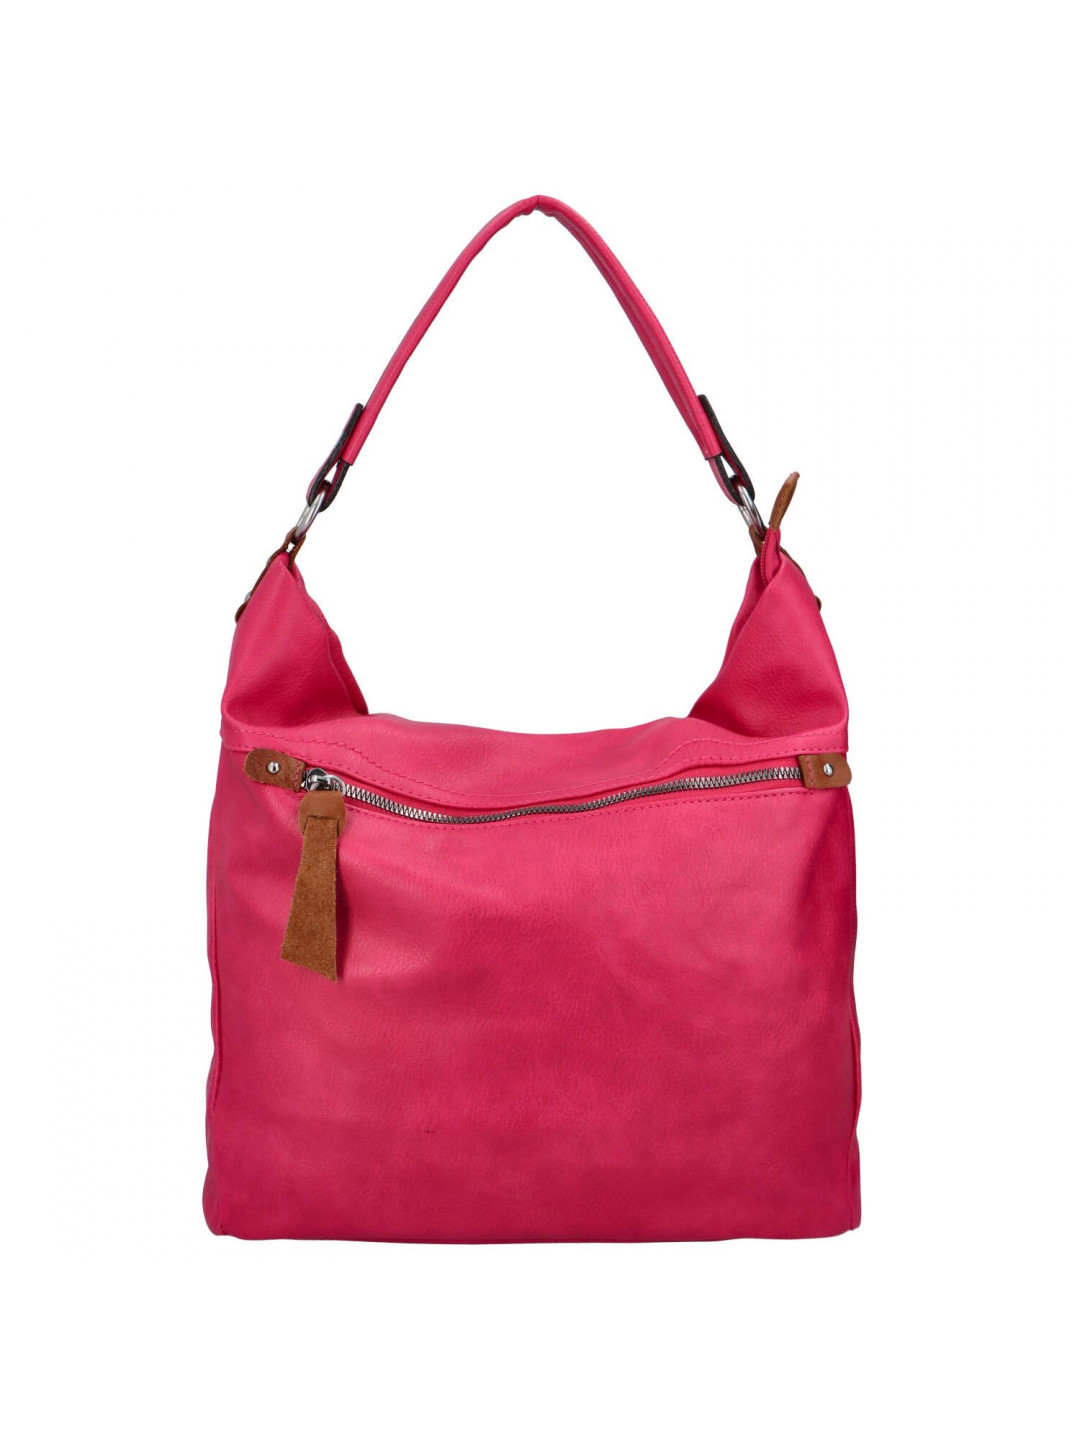 Příjemná dámská koženková taška většího formátu Veronica růžová